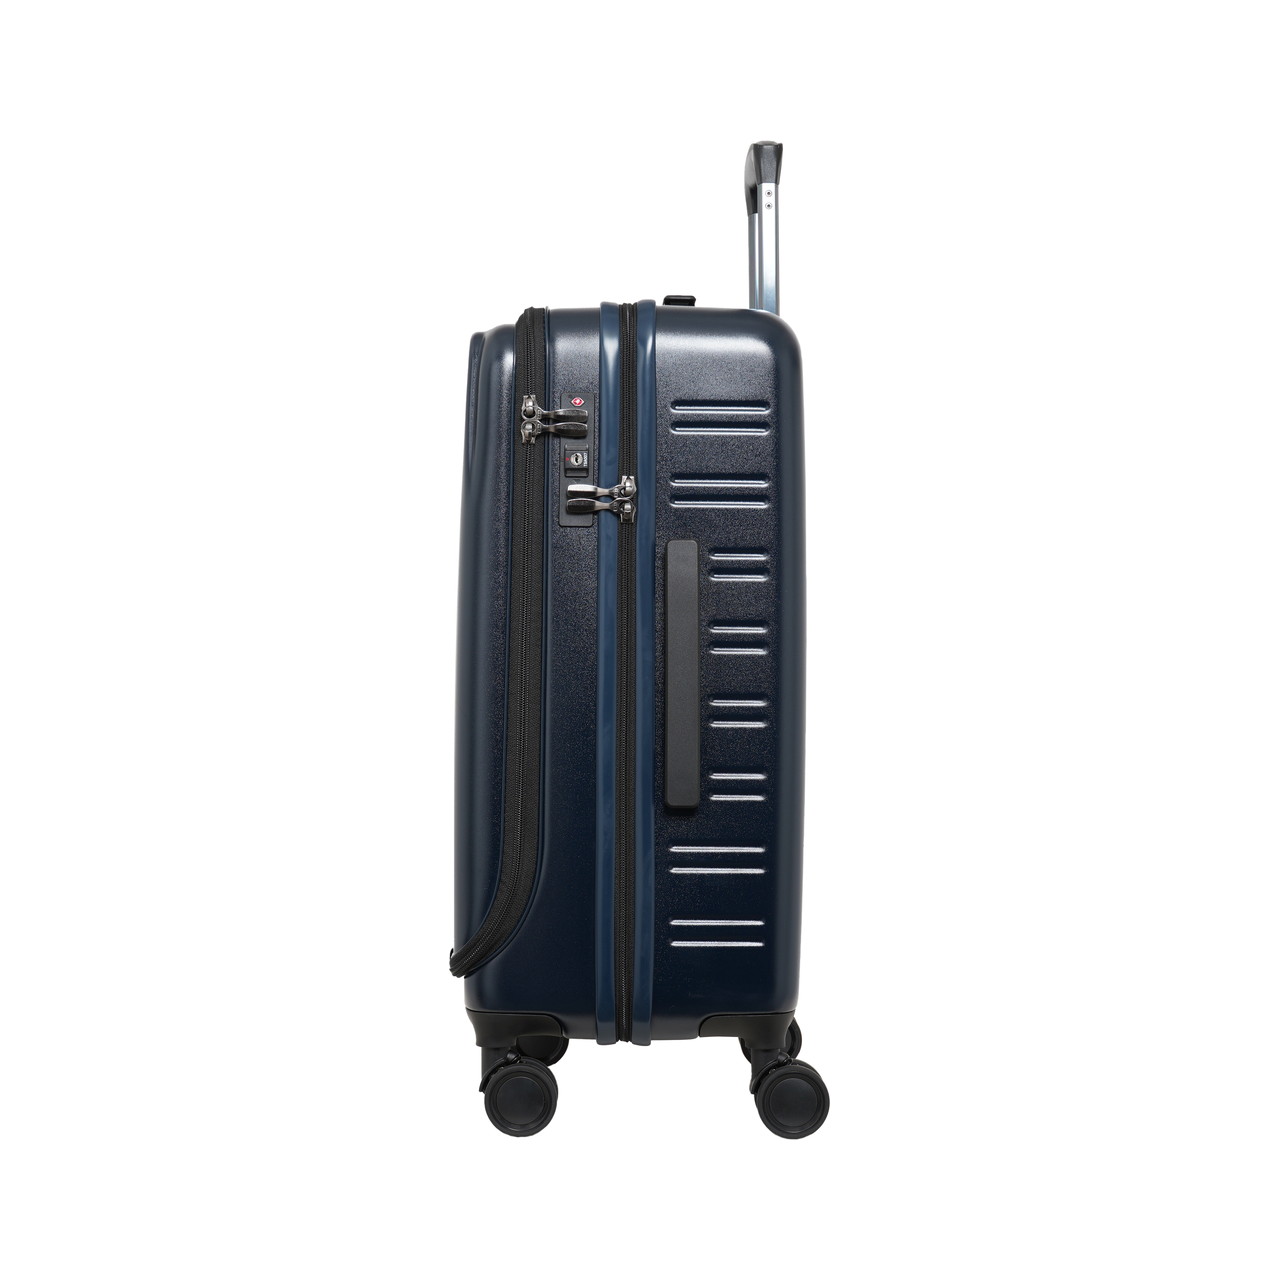 SKYNAVIGATORのスーツケースSK-0839-56のサイド